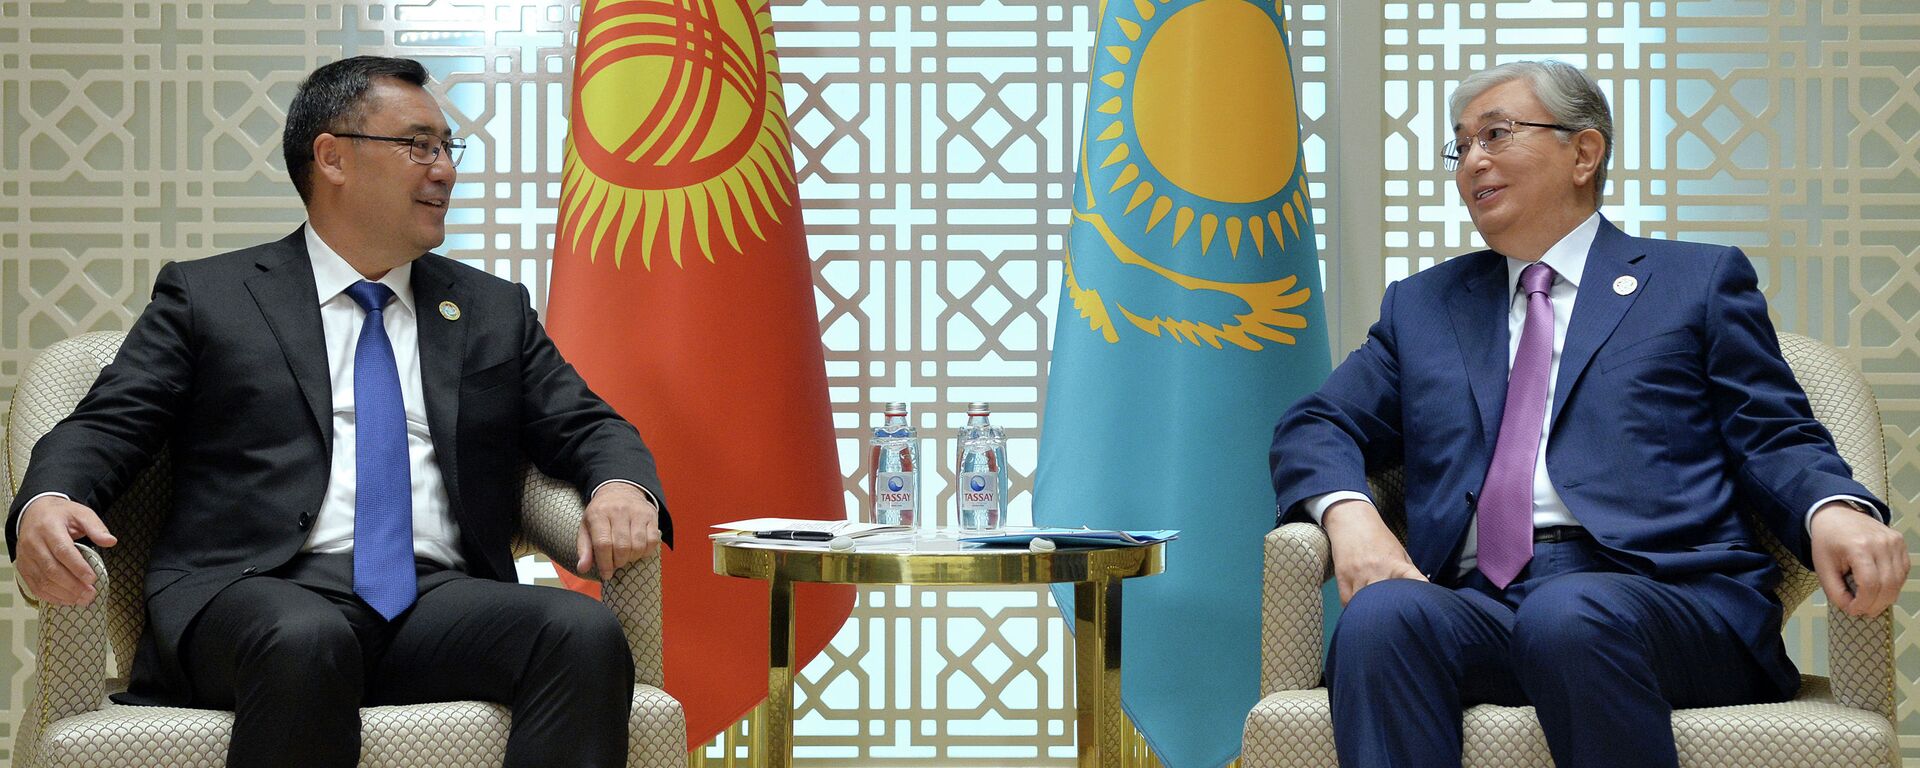 Консультативная встреча глав государств Центральной Азии в Туркменистане - Sputnik Кыргызстан, 1920, 18.01.2022